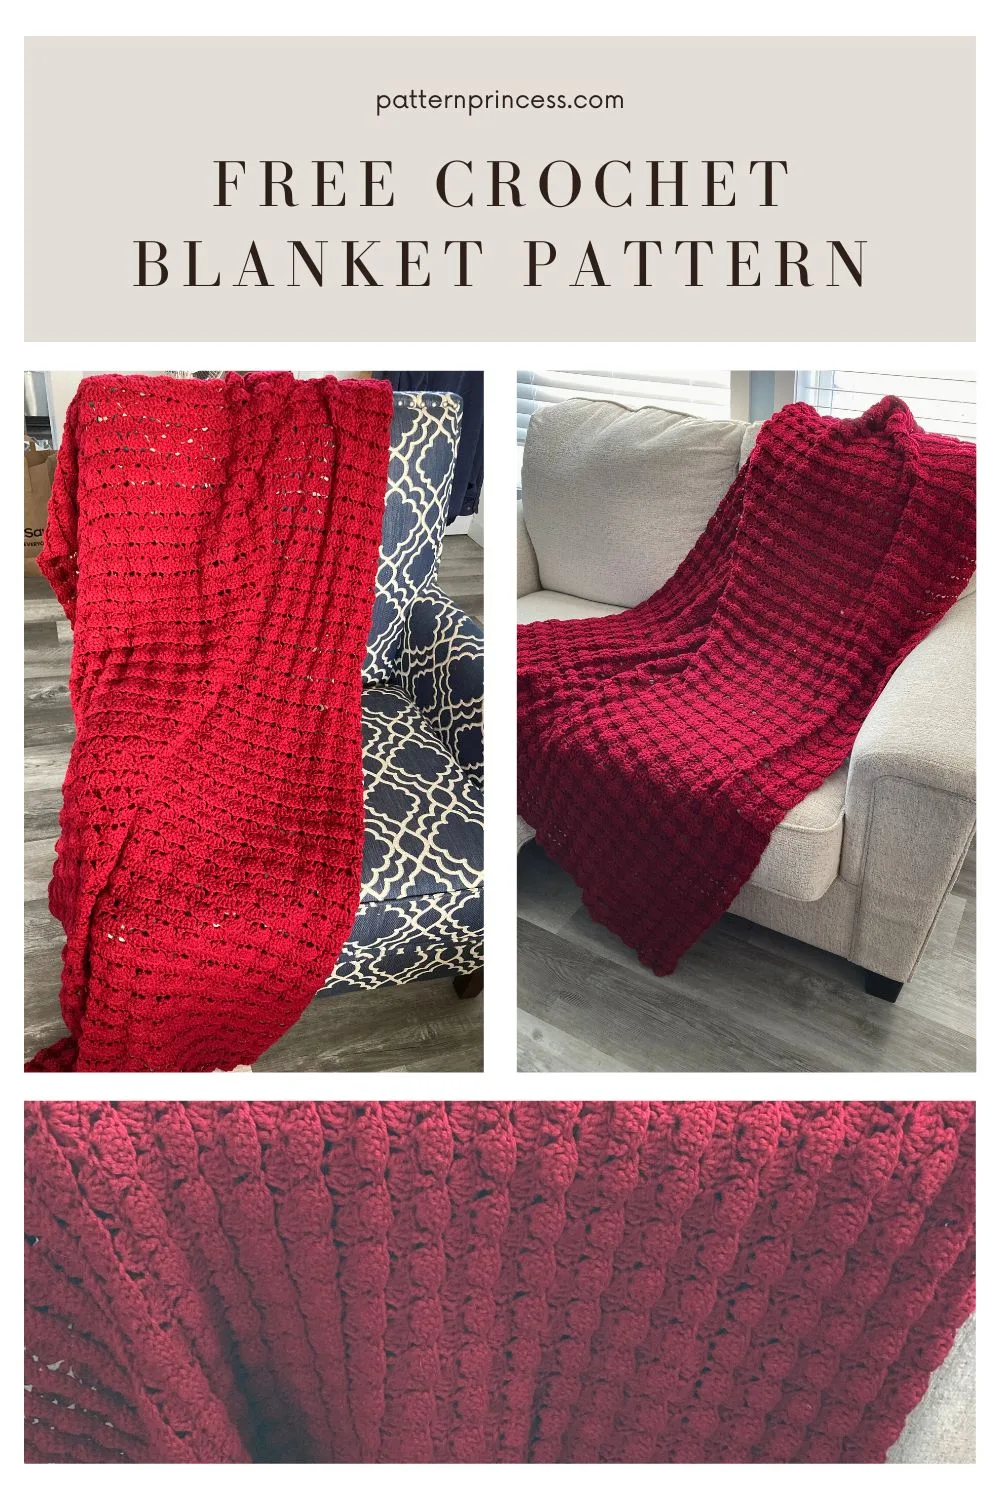 Free Crochet Blanket Pattern in Red